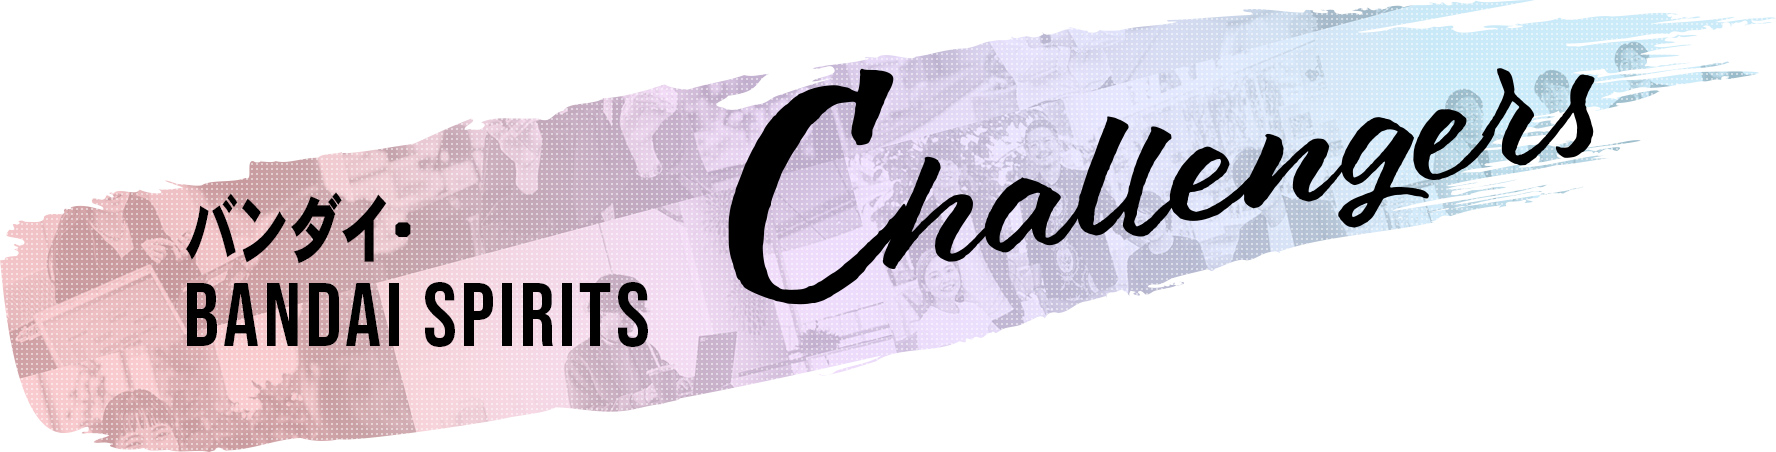 私たちの挑戦・想い・今をお伝えするオウンドメディア「CHALLENGERS」